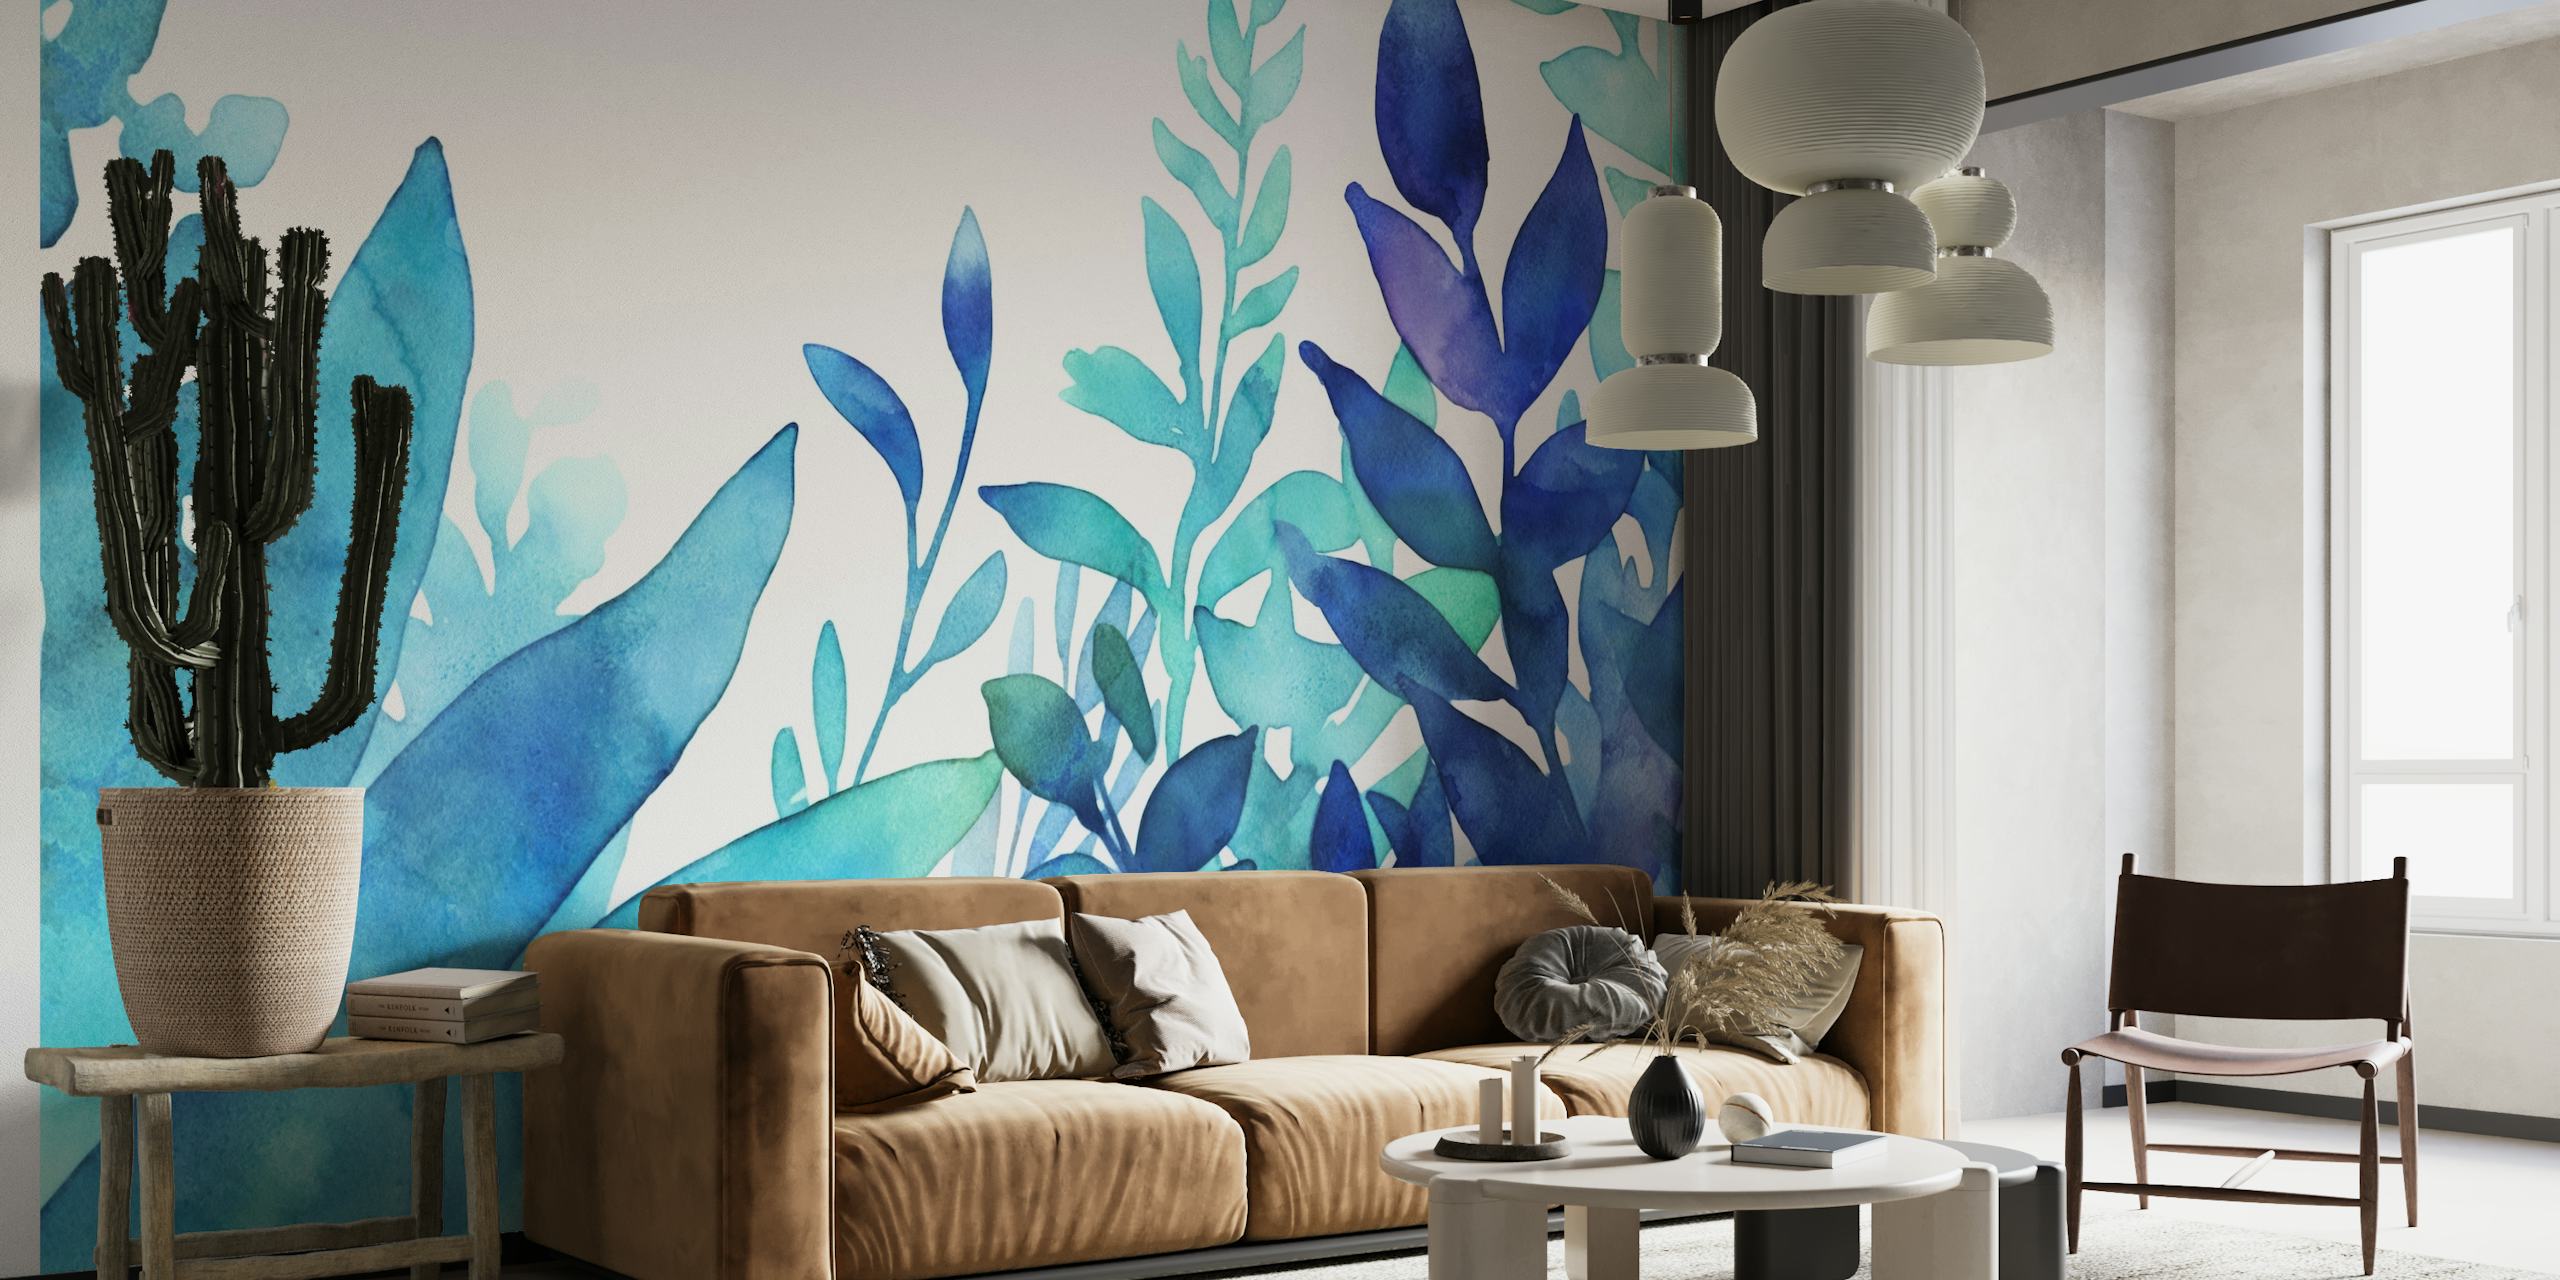 Eine üppige Darstellung türkisfarbener und blauer Aquarellblätter für ein ruhiges Wandgemälde.